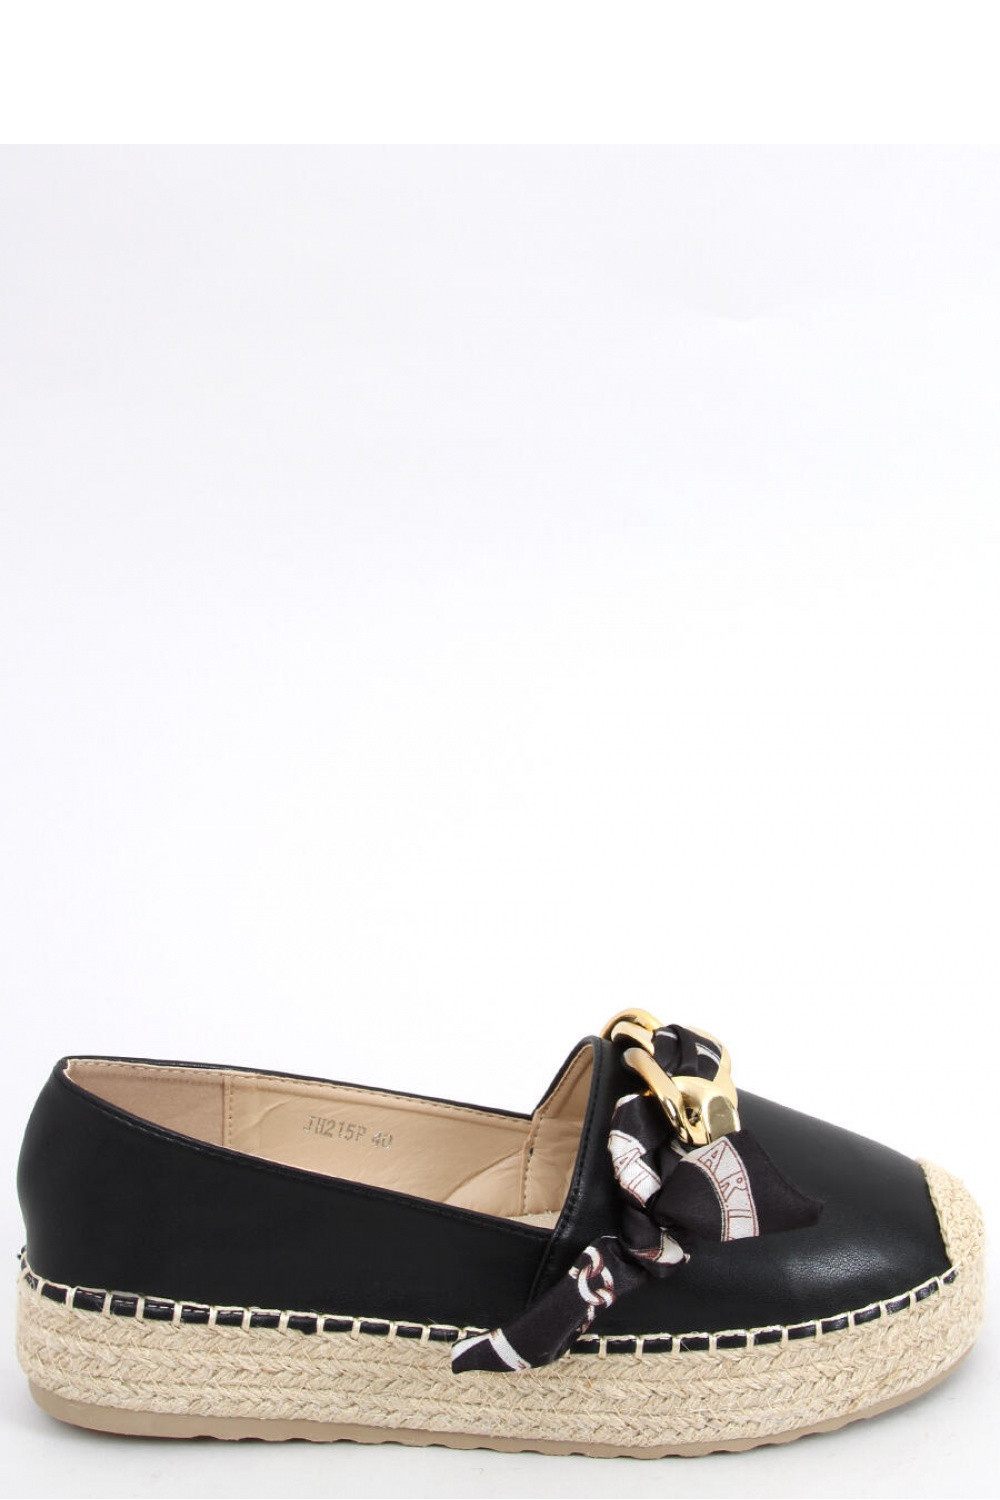 Dámské boty Espadrilky JH215P - Inello 39 černá se zlatou